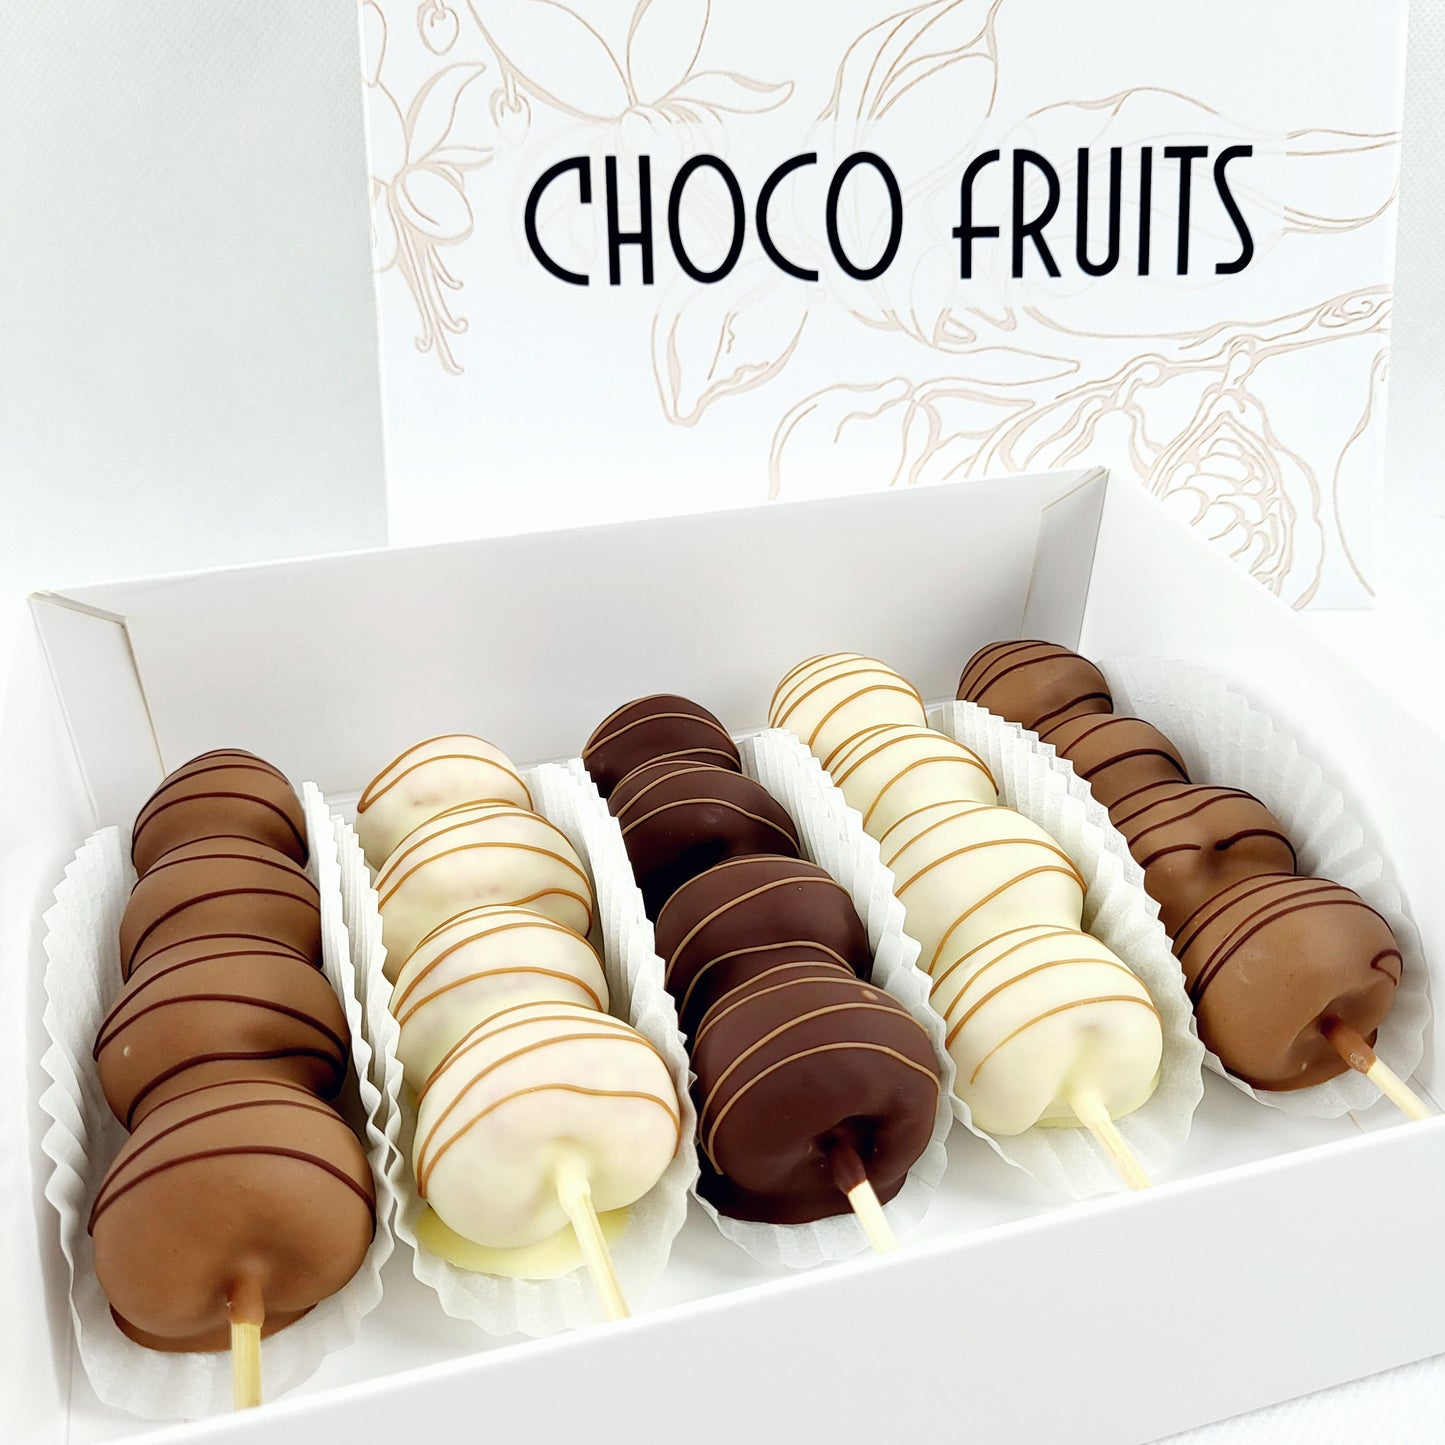 Choco Fruits Schokoerdbeeren und Schokofrüchte Lieferung 